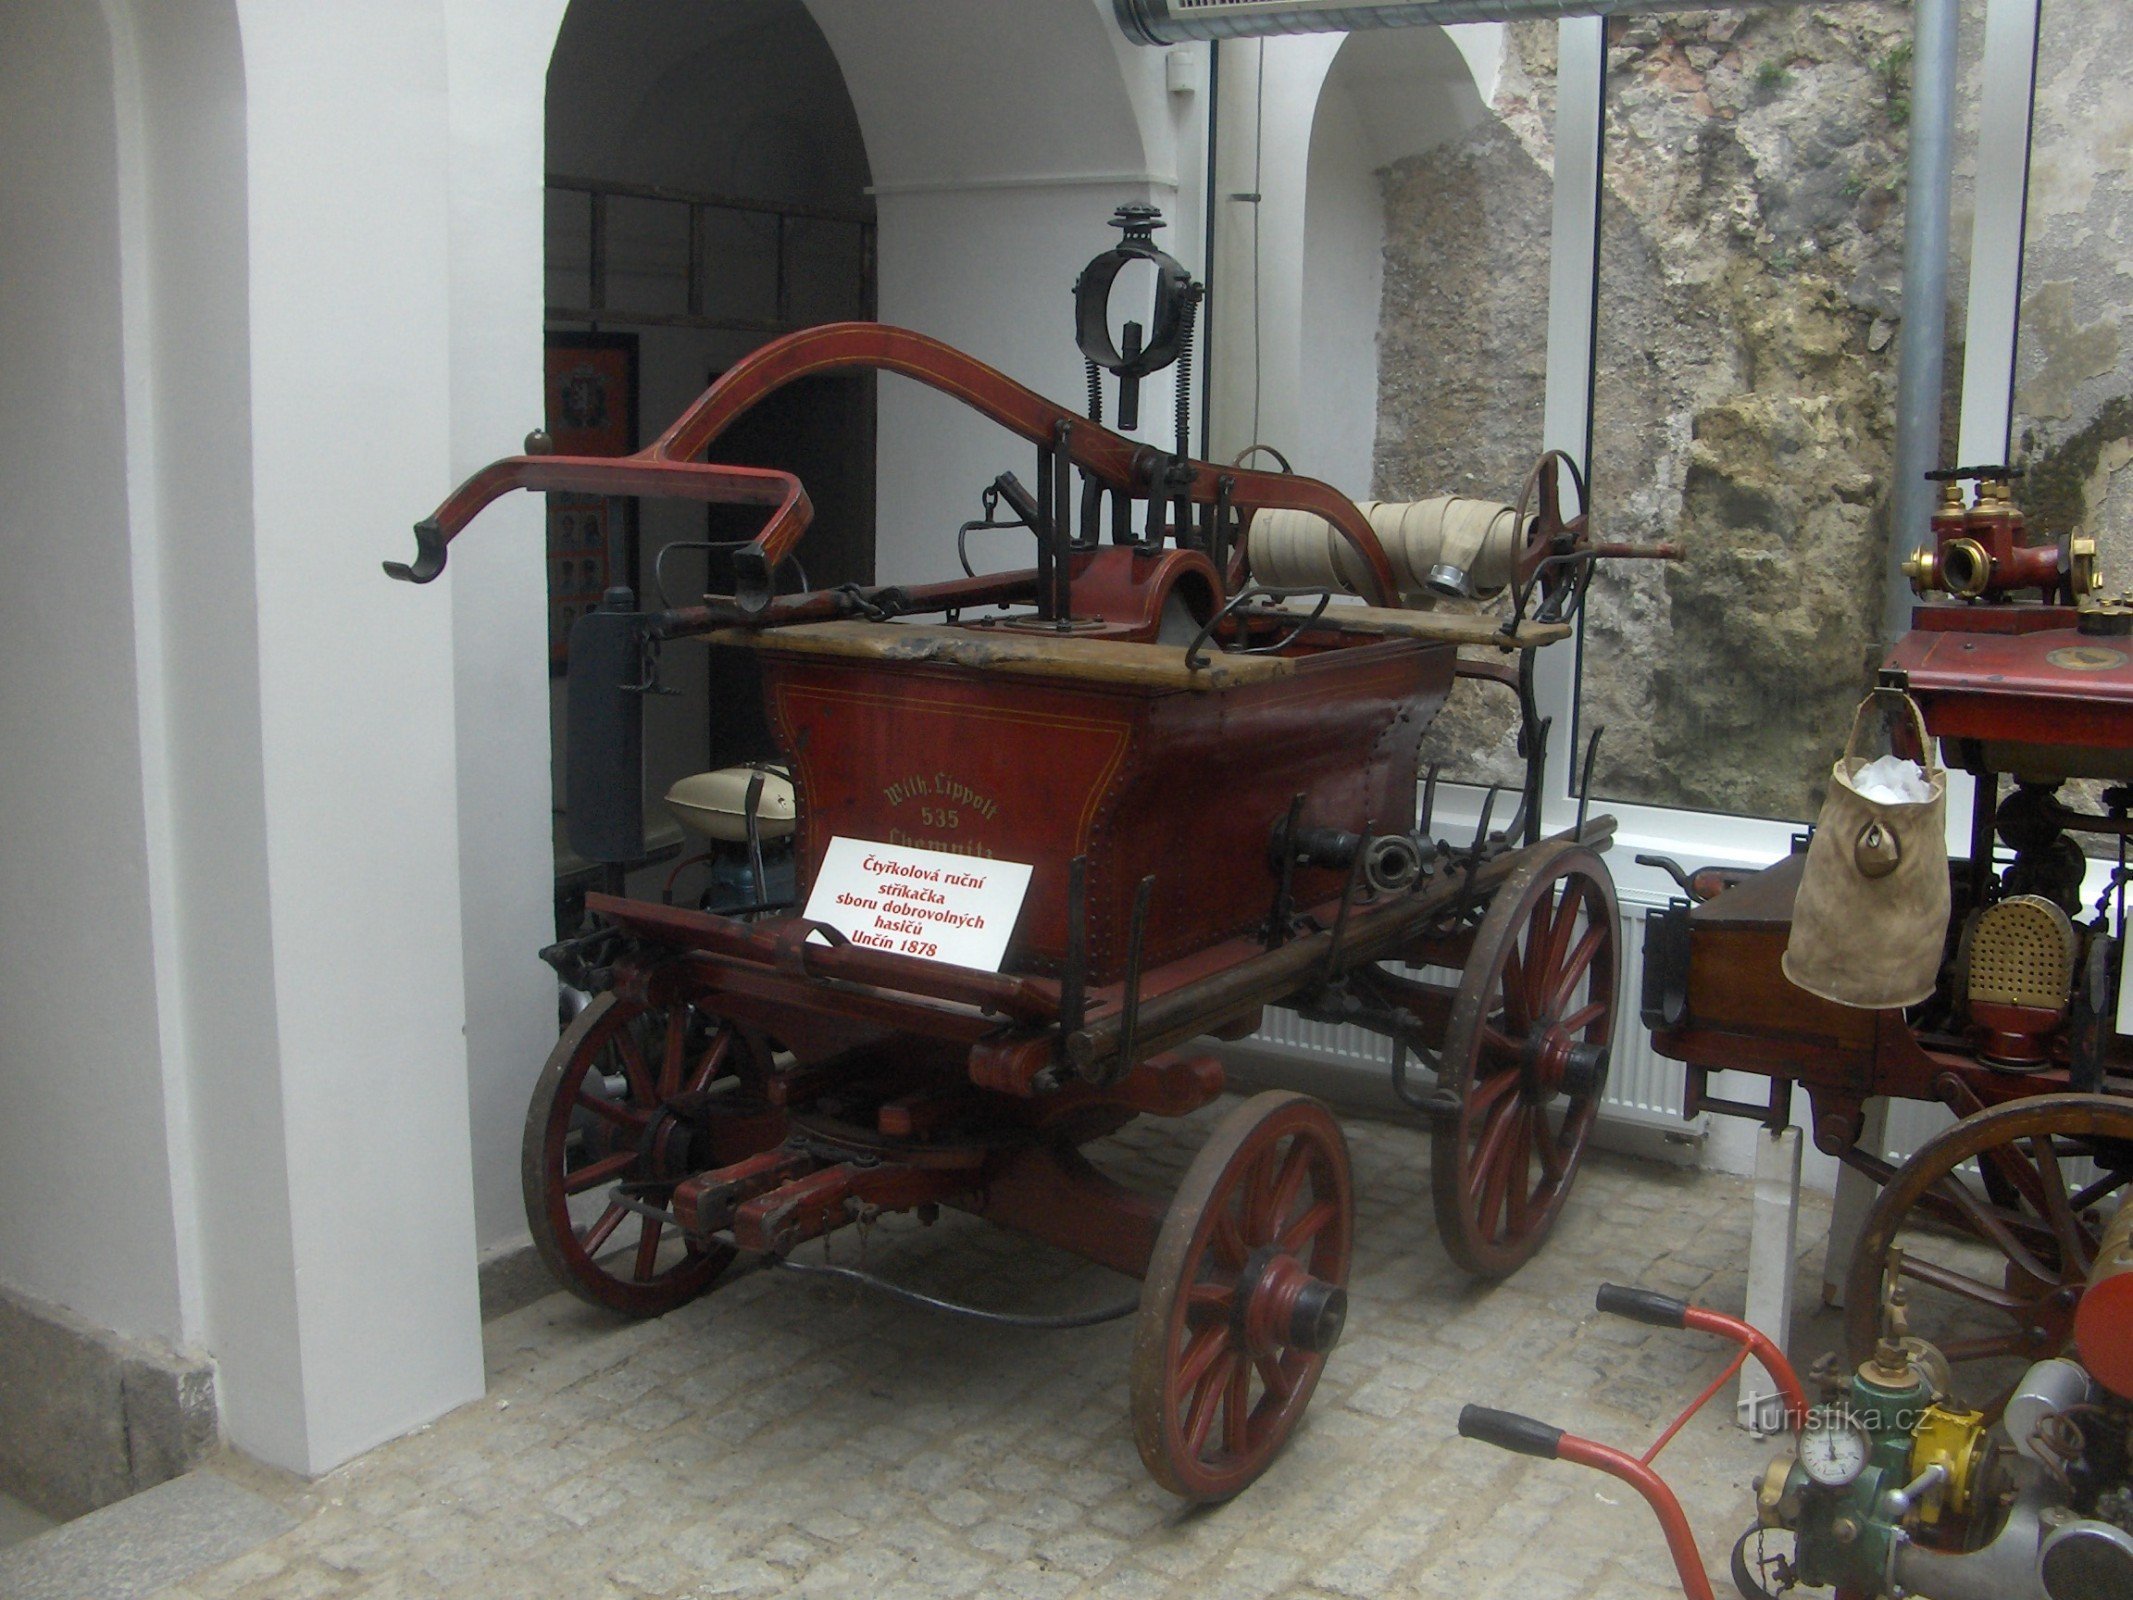 クルプカの消防士博物館。